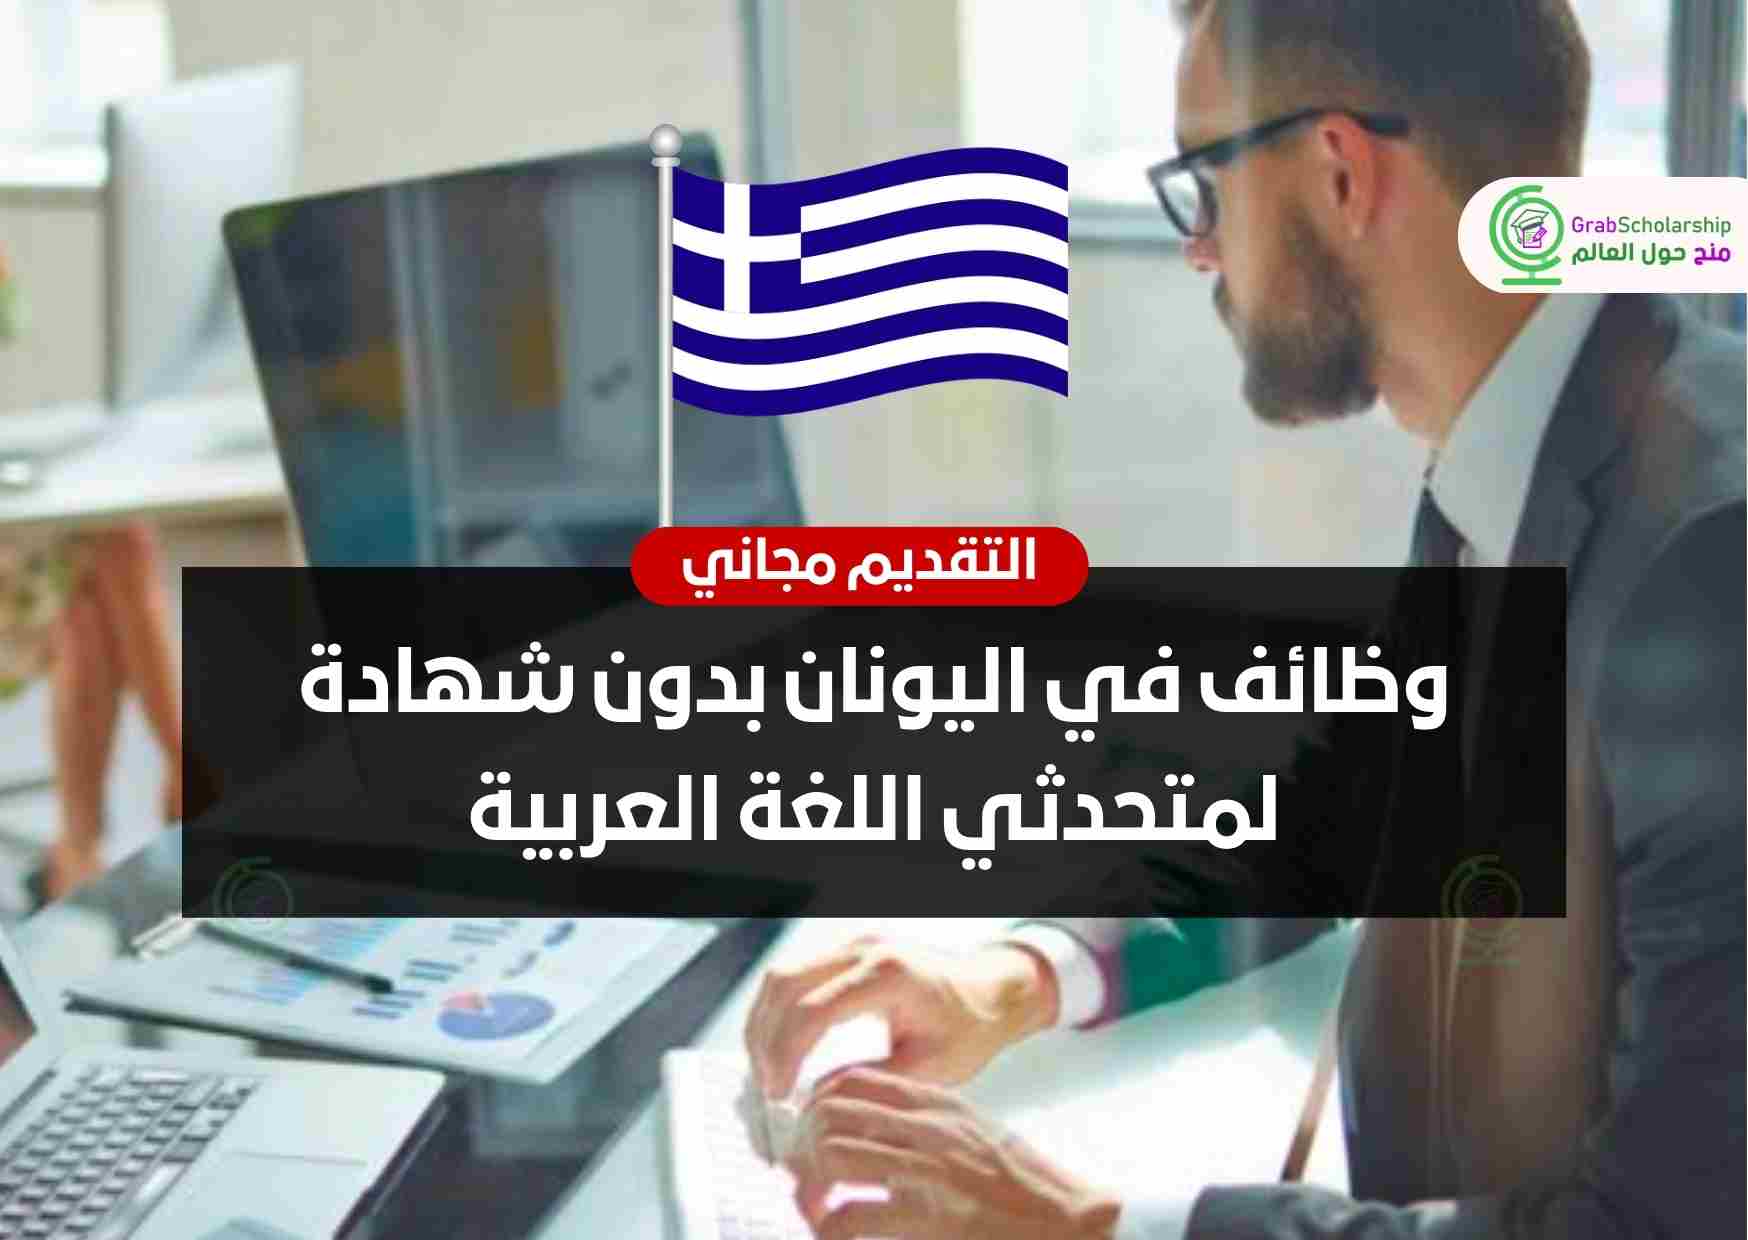 وظائف في اليونان بدون شهادة لمتحدثي اللغة العربية